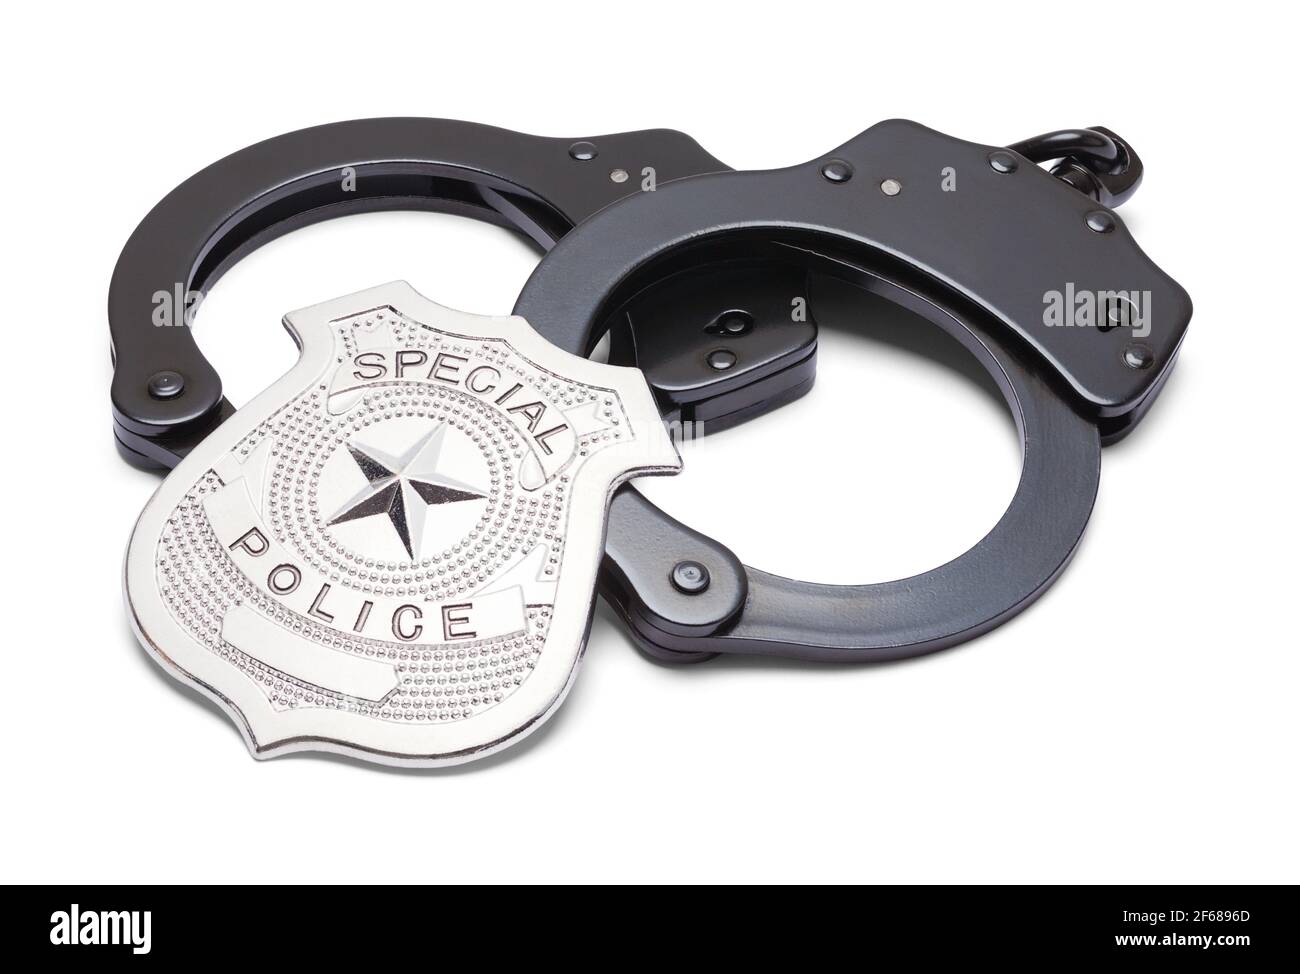 Manette in metallo nero e distintivo della polizia Foto stock - Alamy